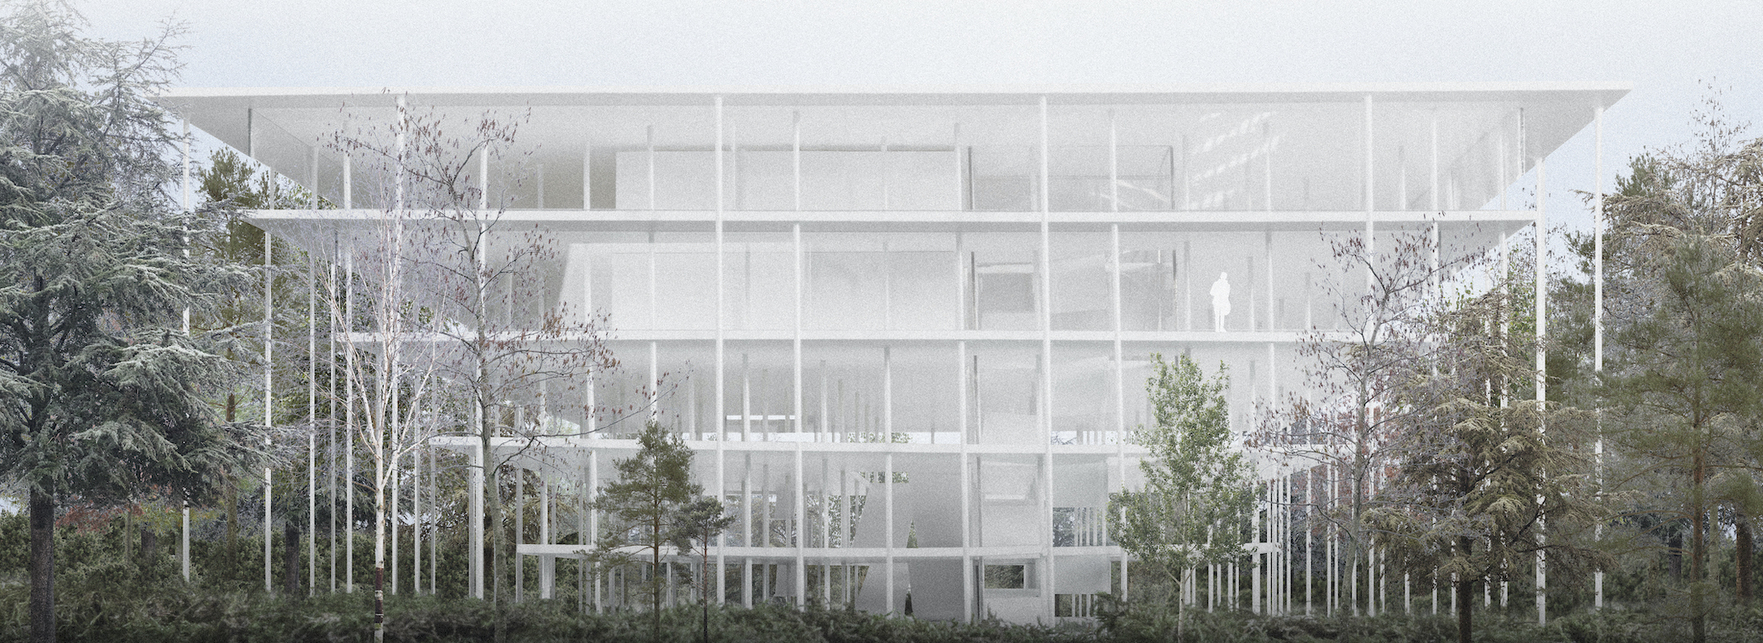 Soproni Multifunkcionális Konferencia- és Rendezvényközpont pályázat – tervező: Partizan Architecture